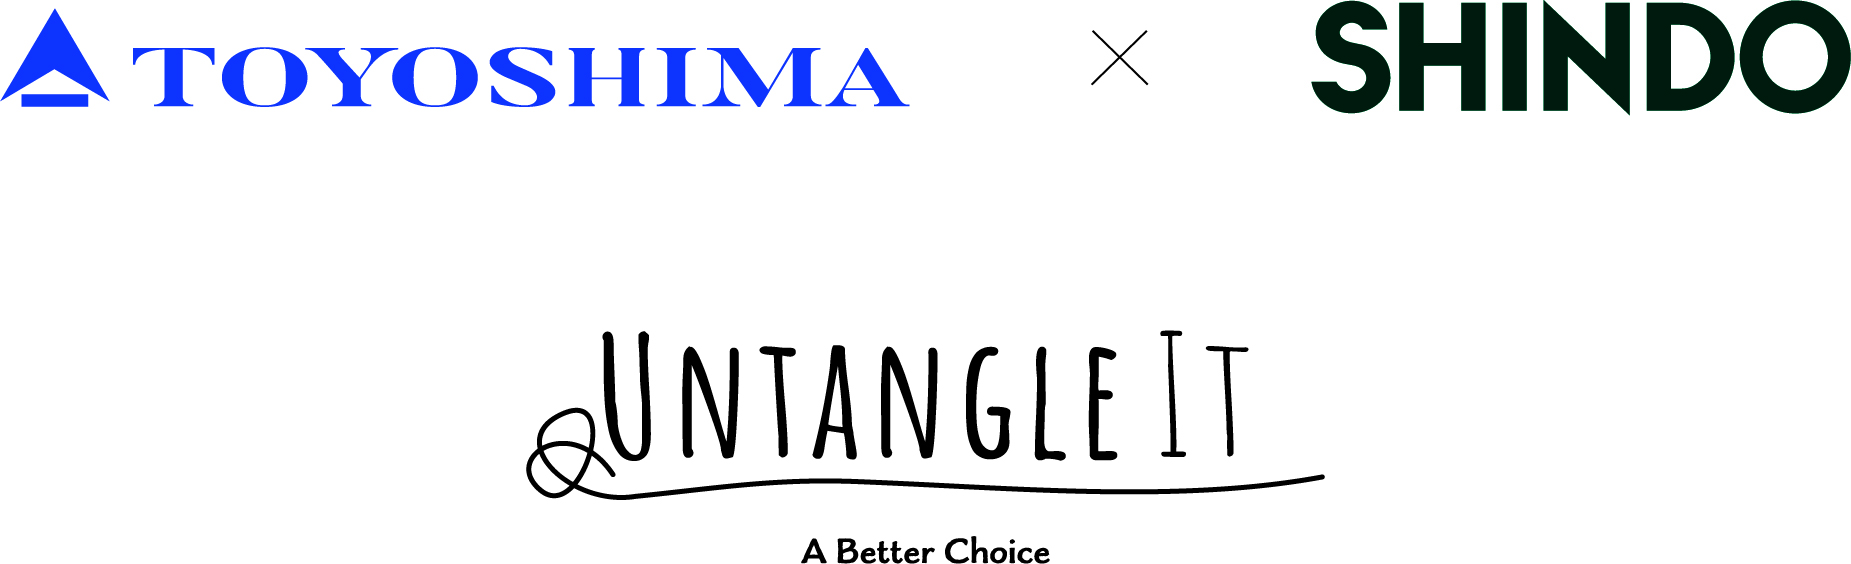 棄てられる漁網を衣服の原料にするチャレンジ「UNTANGLE IT™(アンタングルイット)」豊島とSHINDOがブランドパートナー連携のサブ画像1